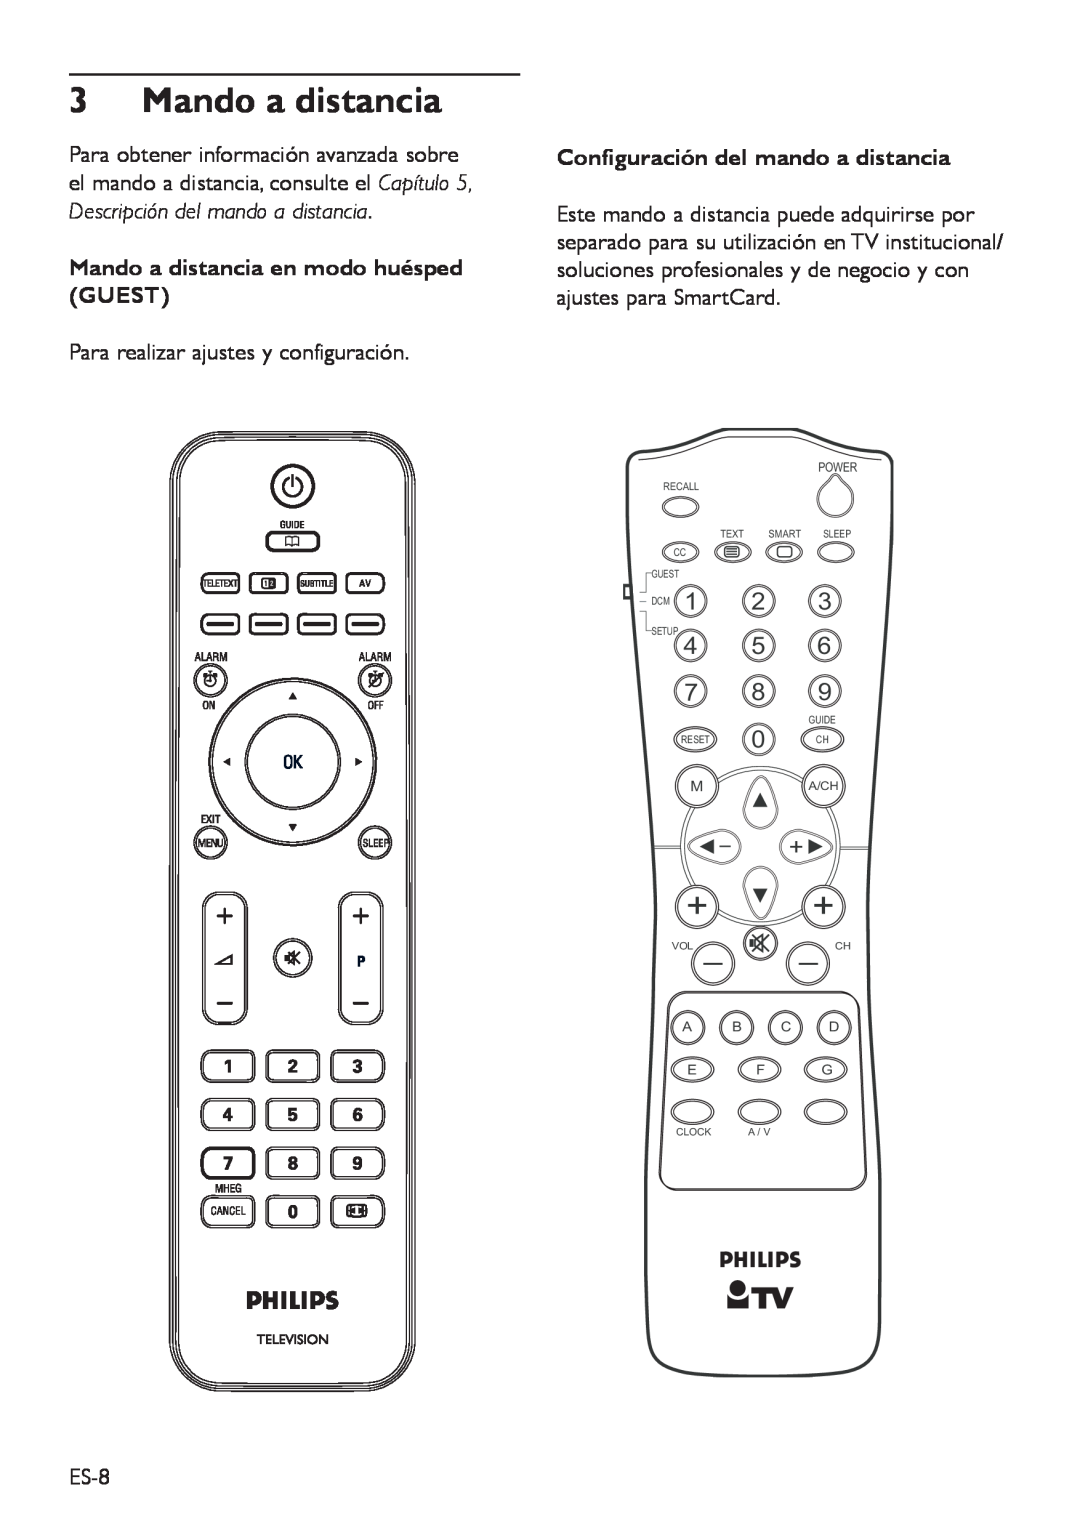 Philips DFU-DEC2008 manual Mando a distancia en modo huésped GUEST, Configuración del mando a distancia, Ch 